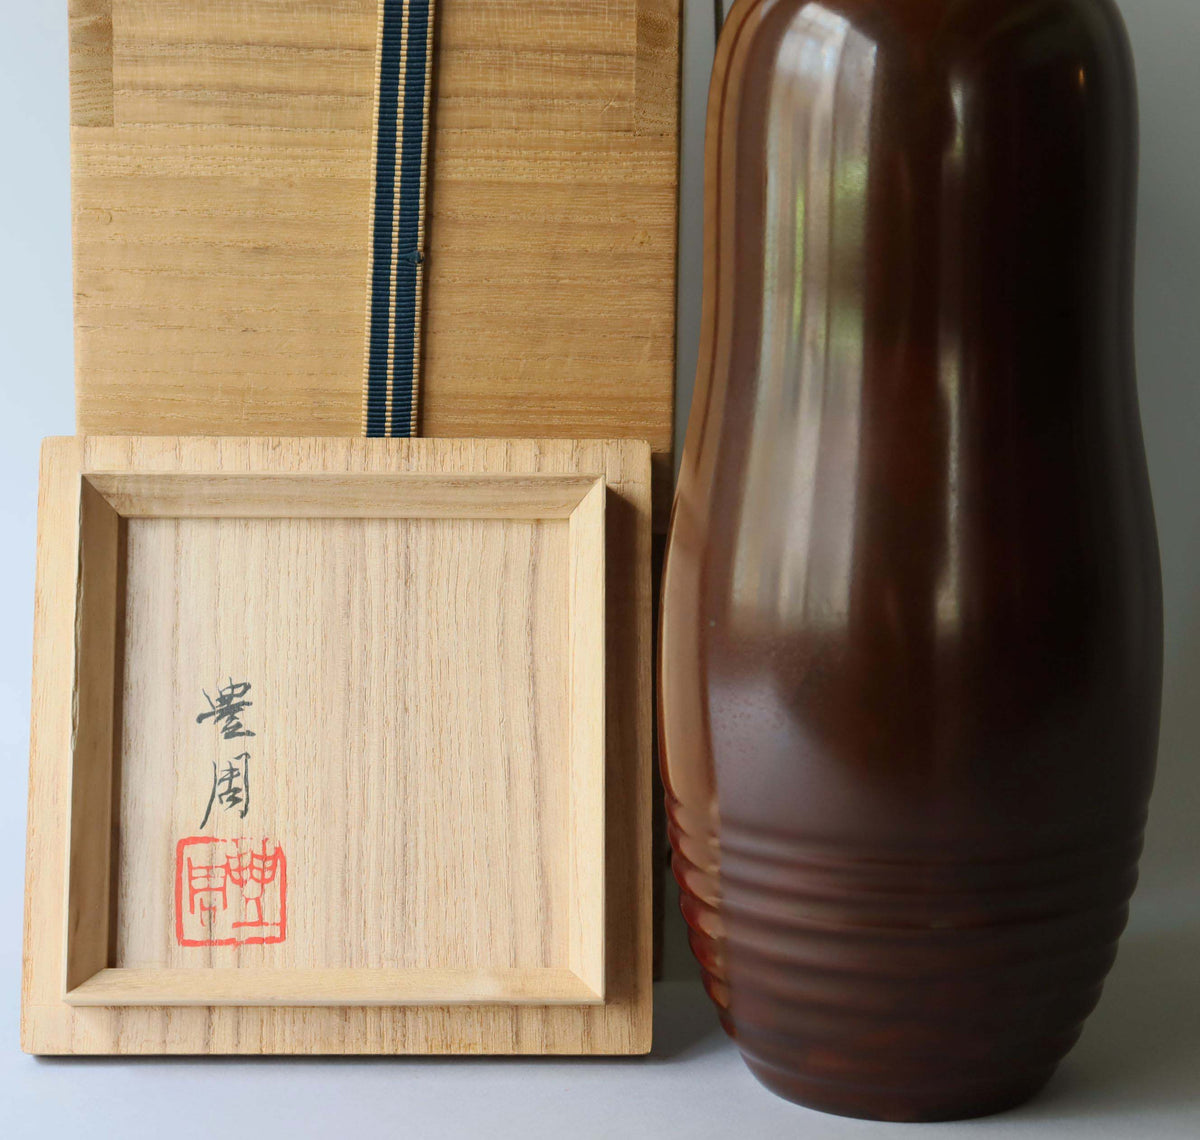 高村豊周/水紋朱銅花入れ【 Bronze vase by TOYOCHIKA TAKAMURA 